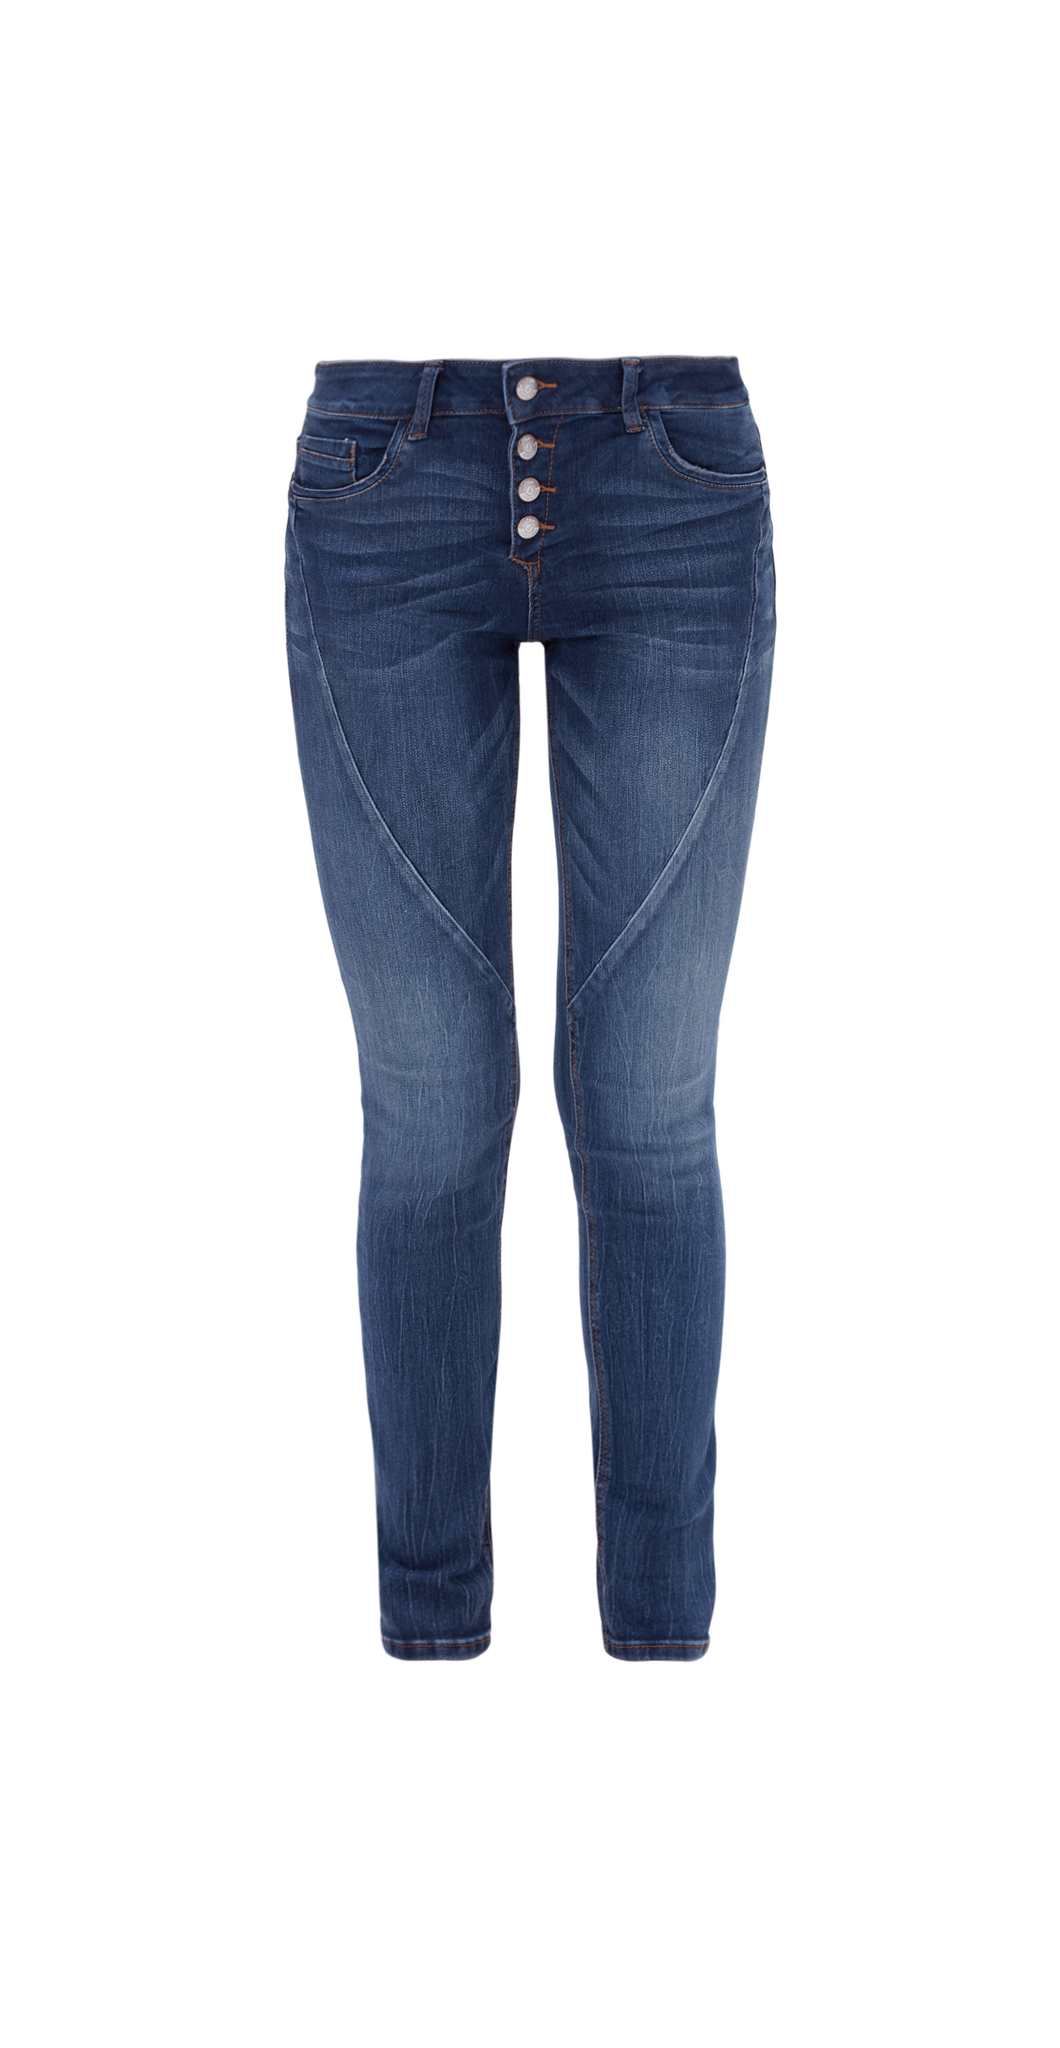 Buy Smart Slim: Stretch jeans | s.Oliver shop